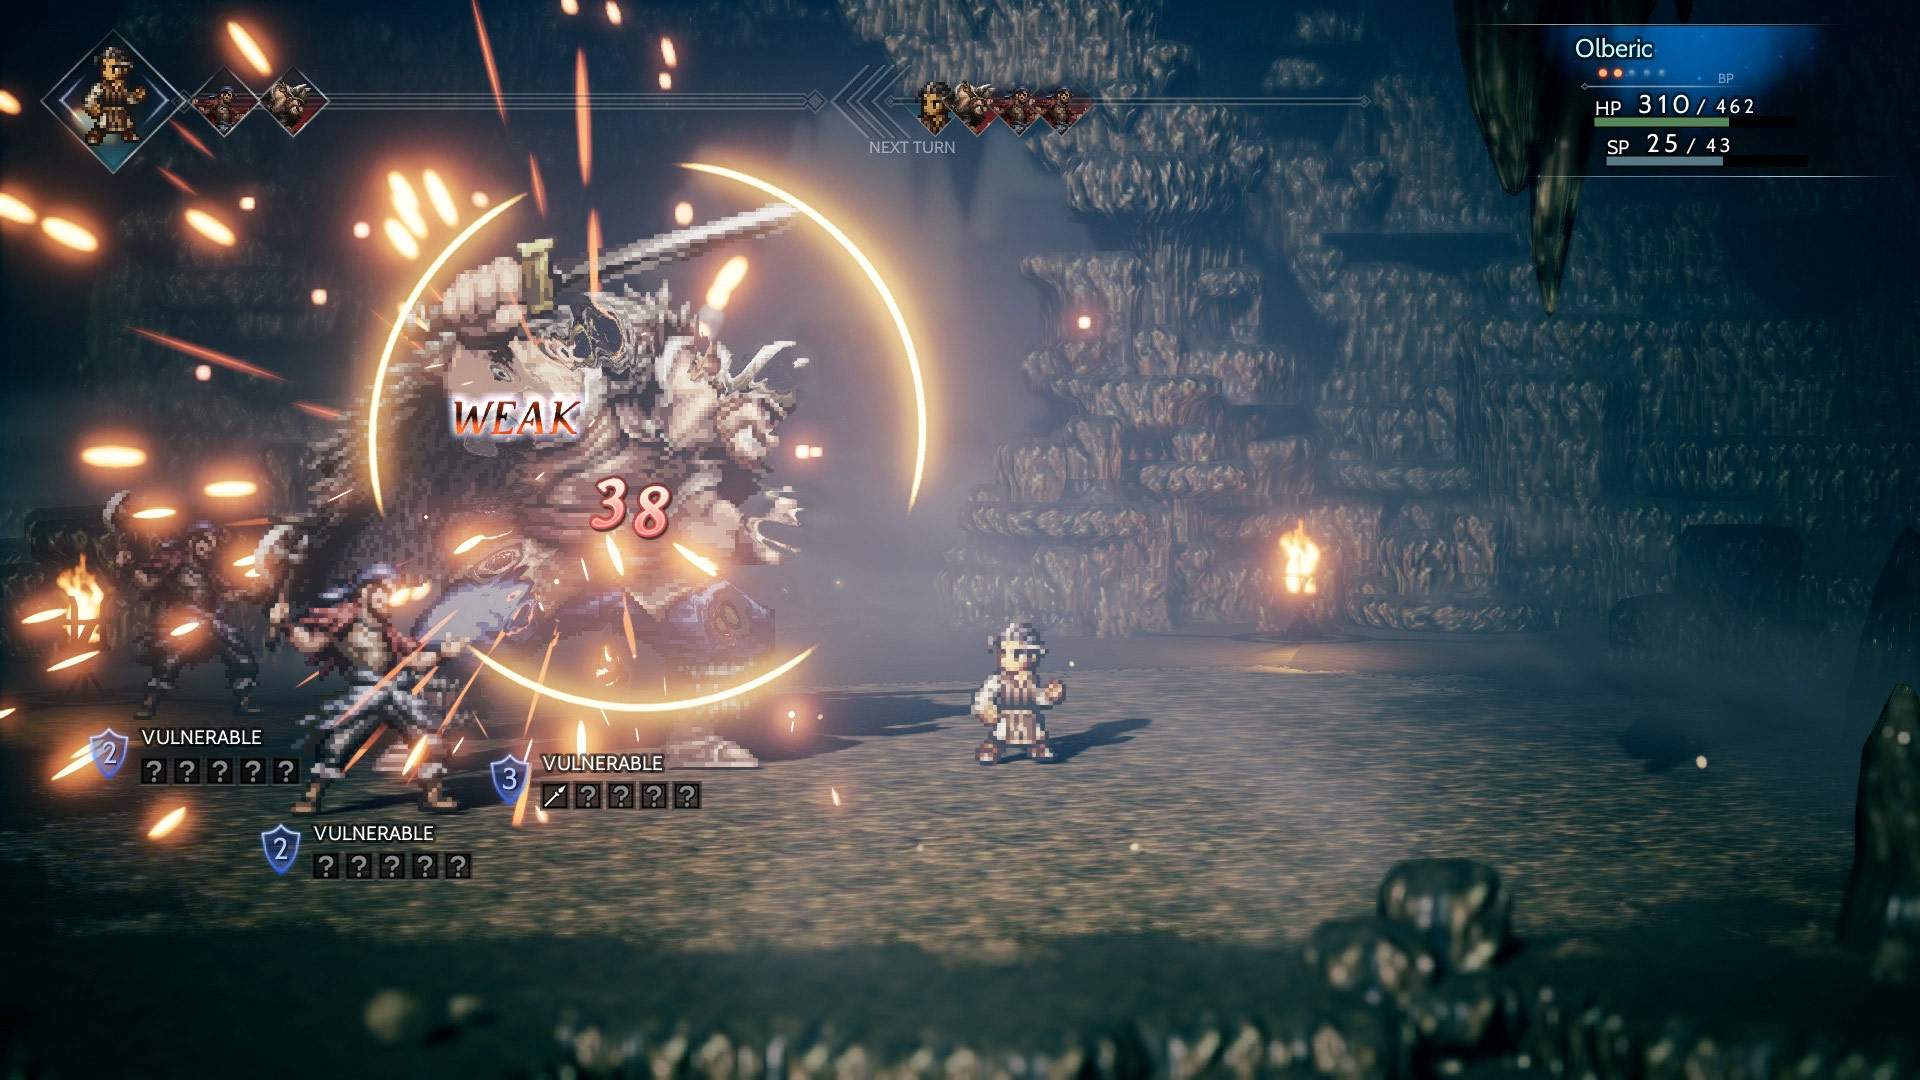 Captura de pantalla de un combate del juego que muestra a Olberic usando un ataque contra tres enemigos en una mazmorra oscura.